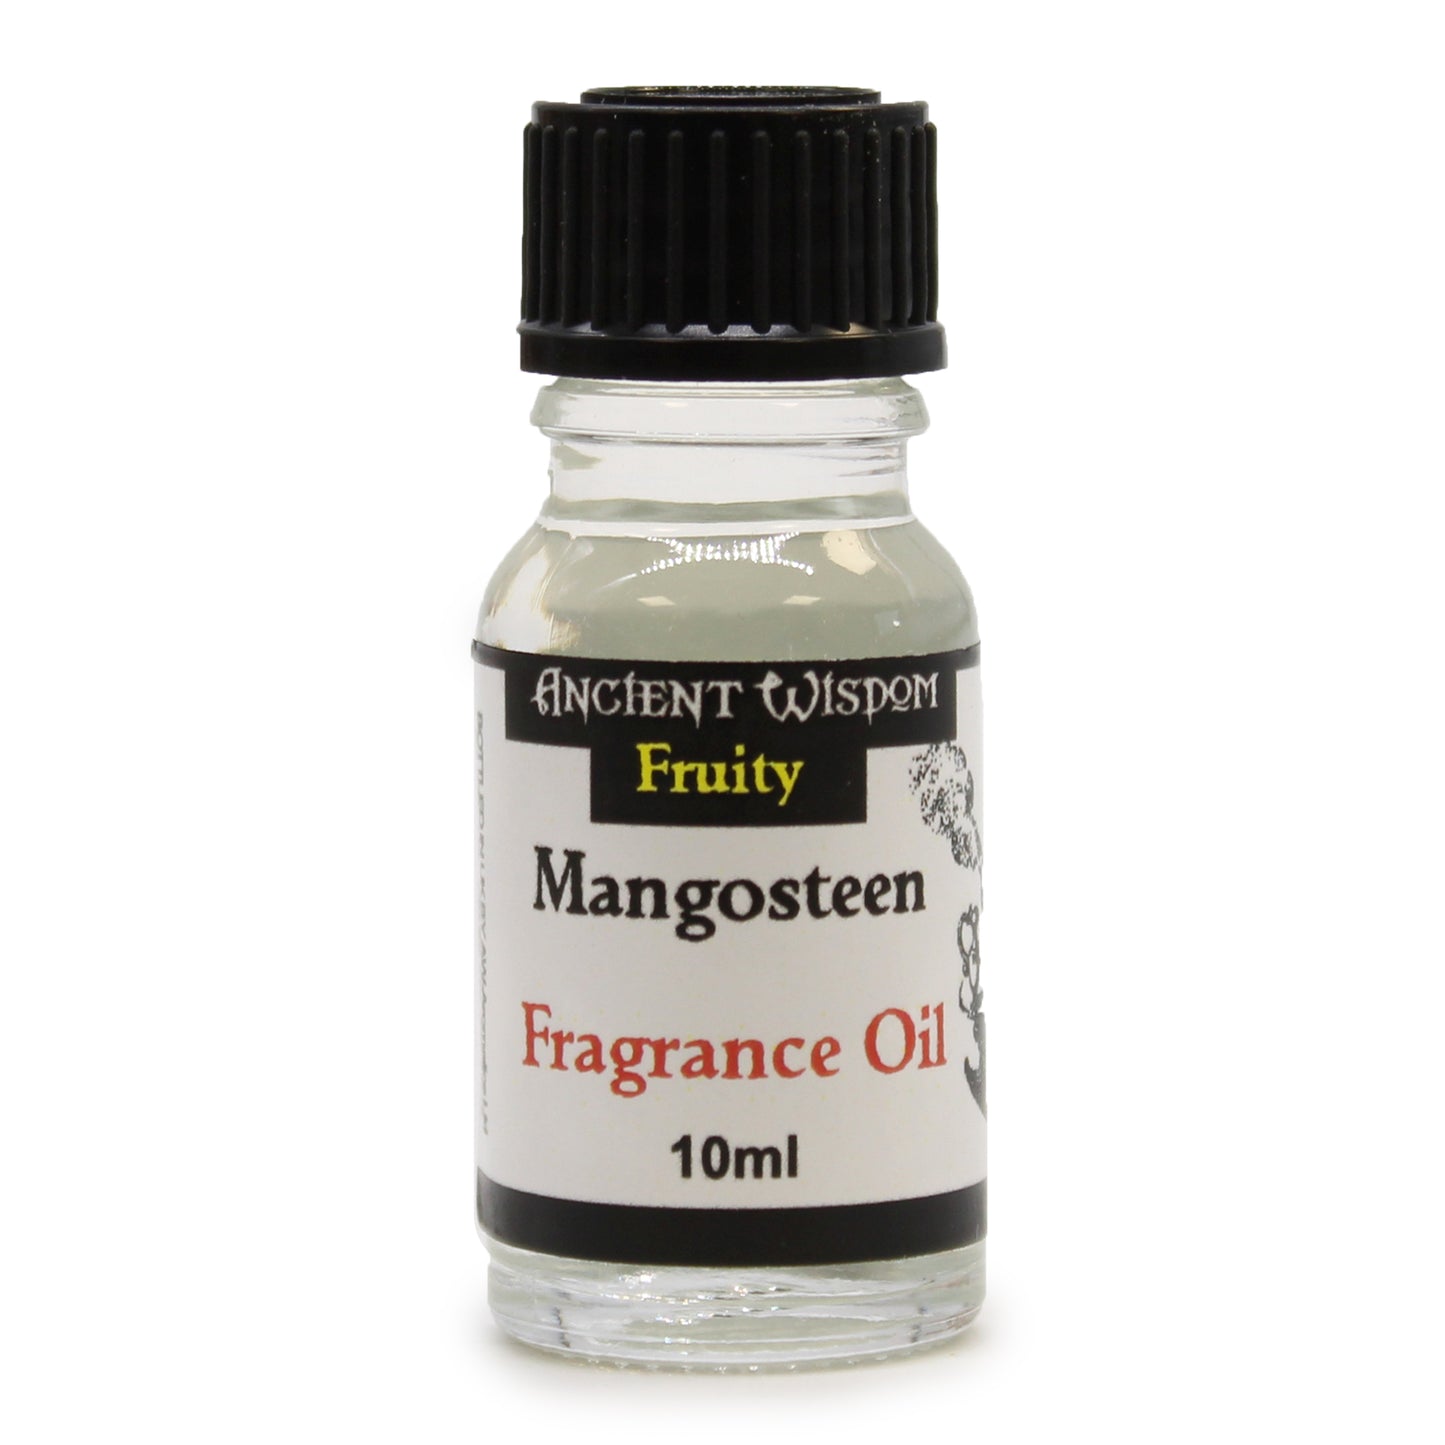 Mangosteen Fragrance Oil 10ml